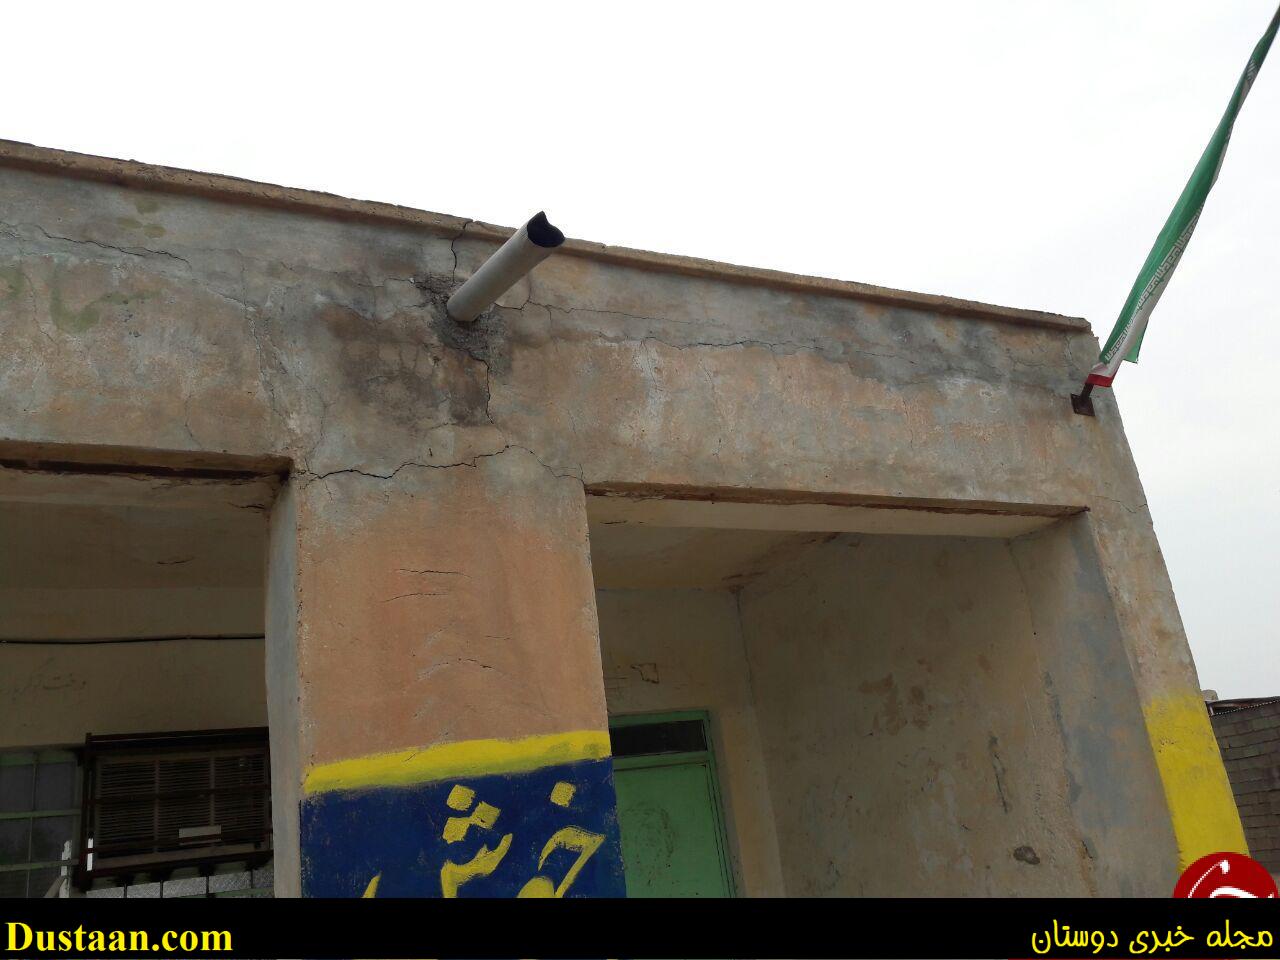 سایه سنگین سقف های لرزان بر سر دانش آموزان روستای ابید + تصاویر